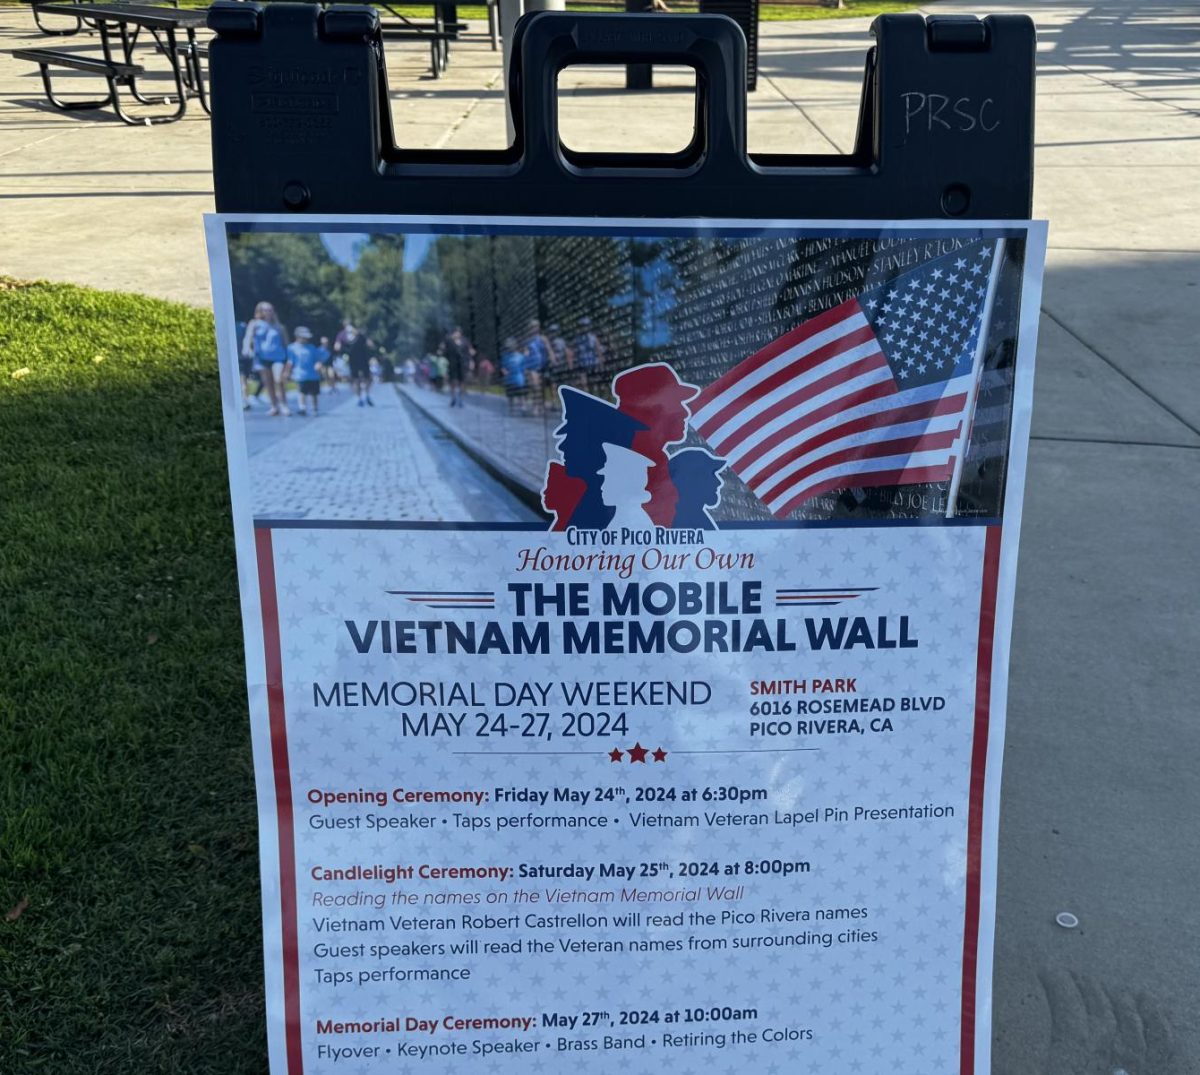 Honoring Heroes: The Mobile Vietnam Memorial Wall in Pico Rivera